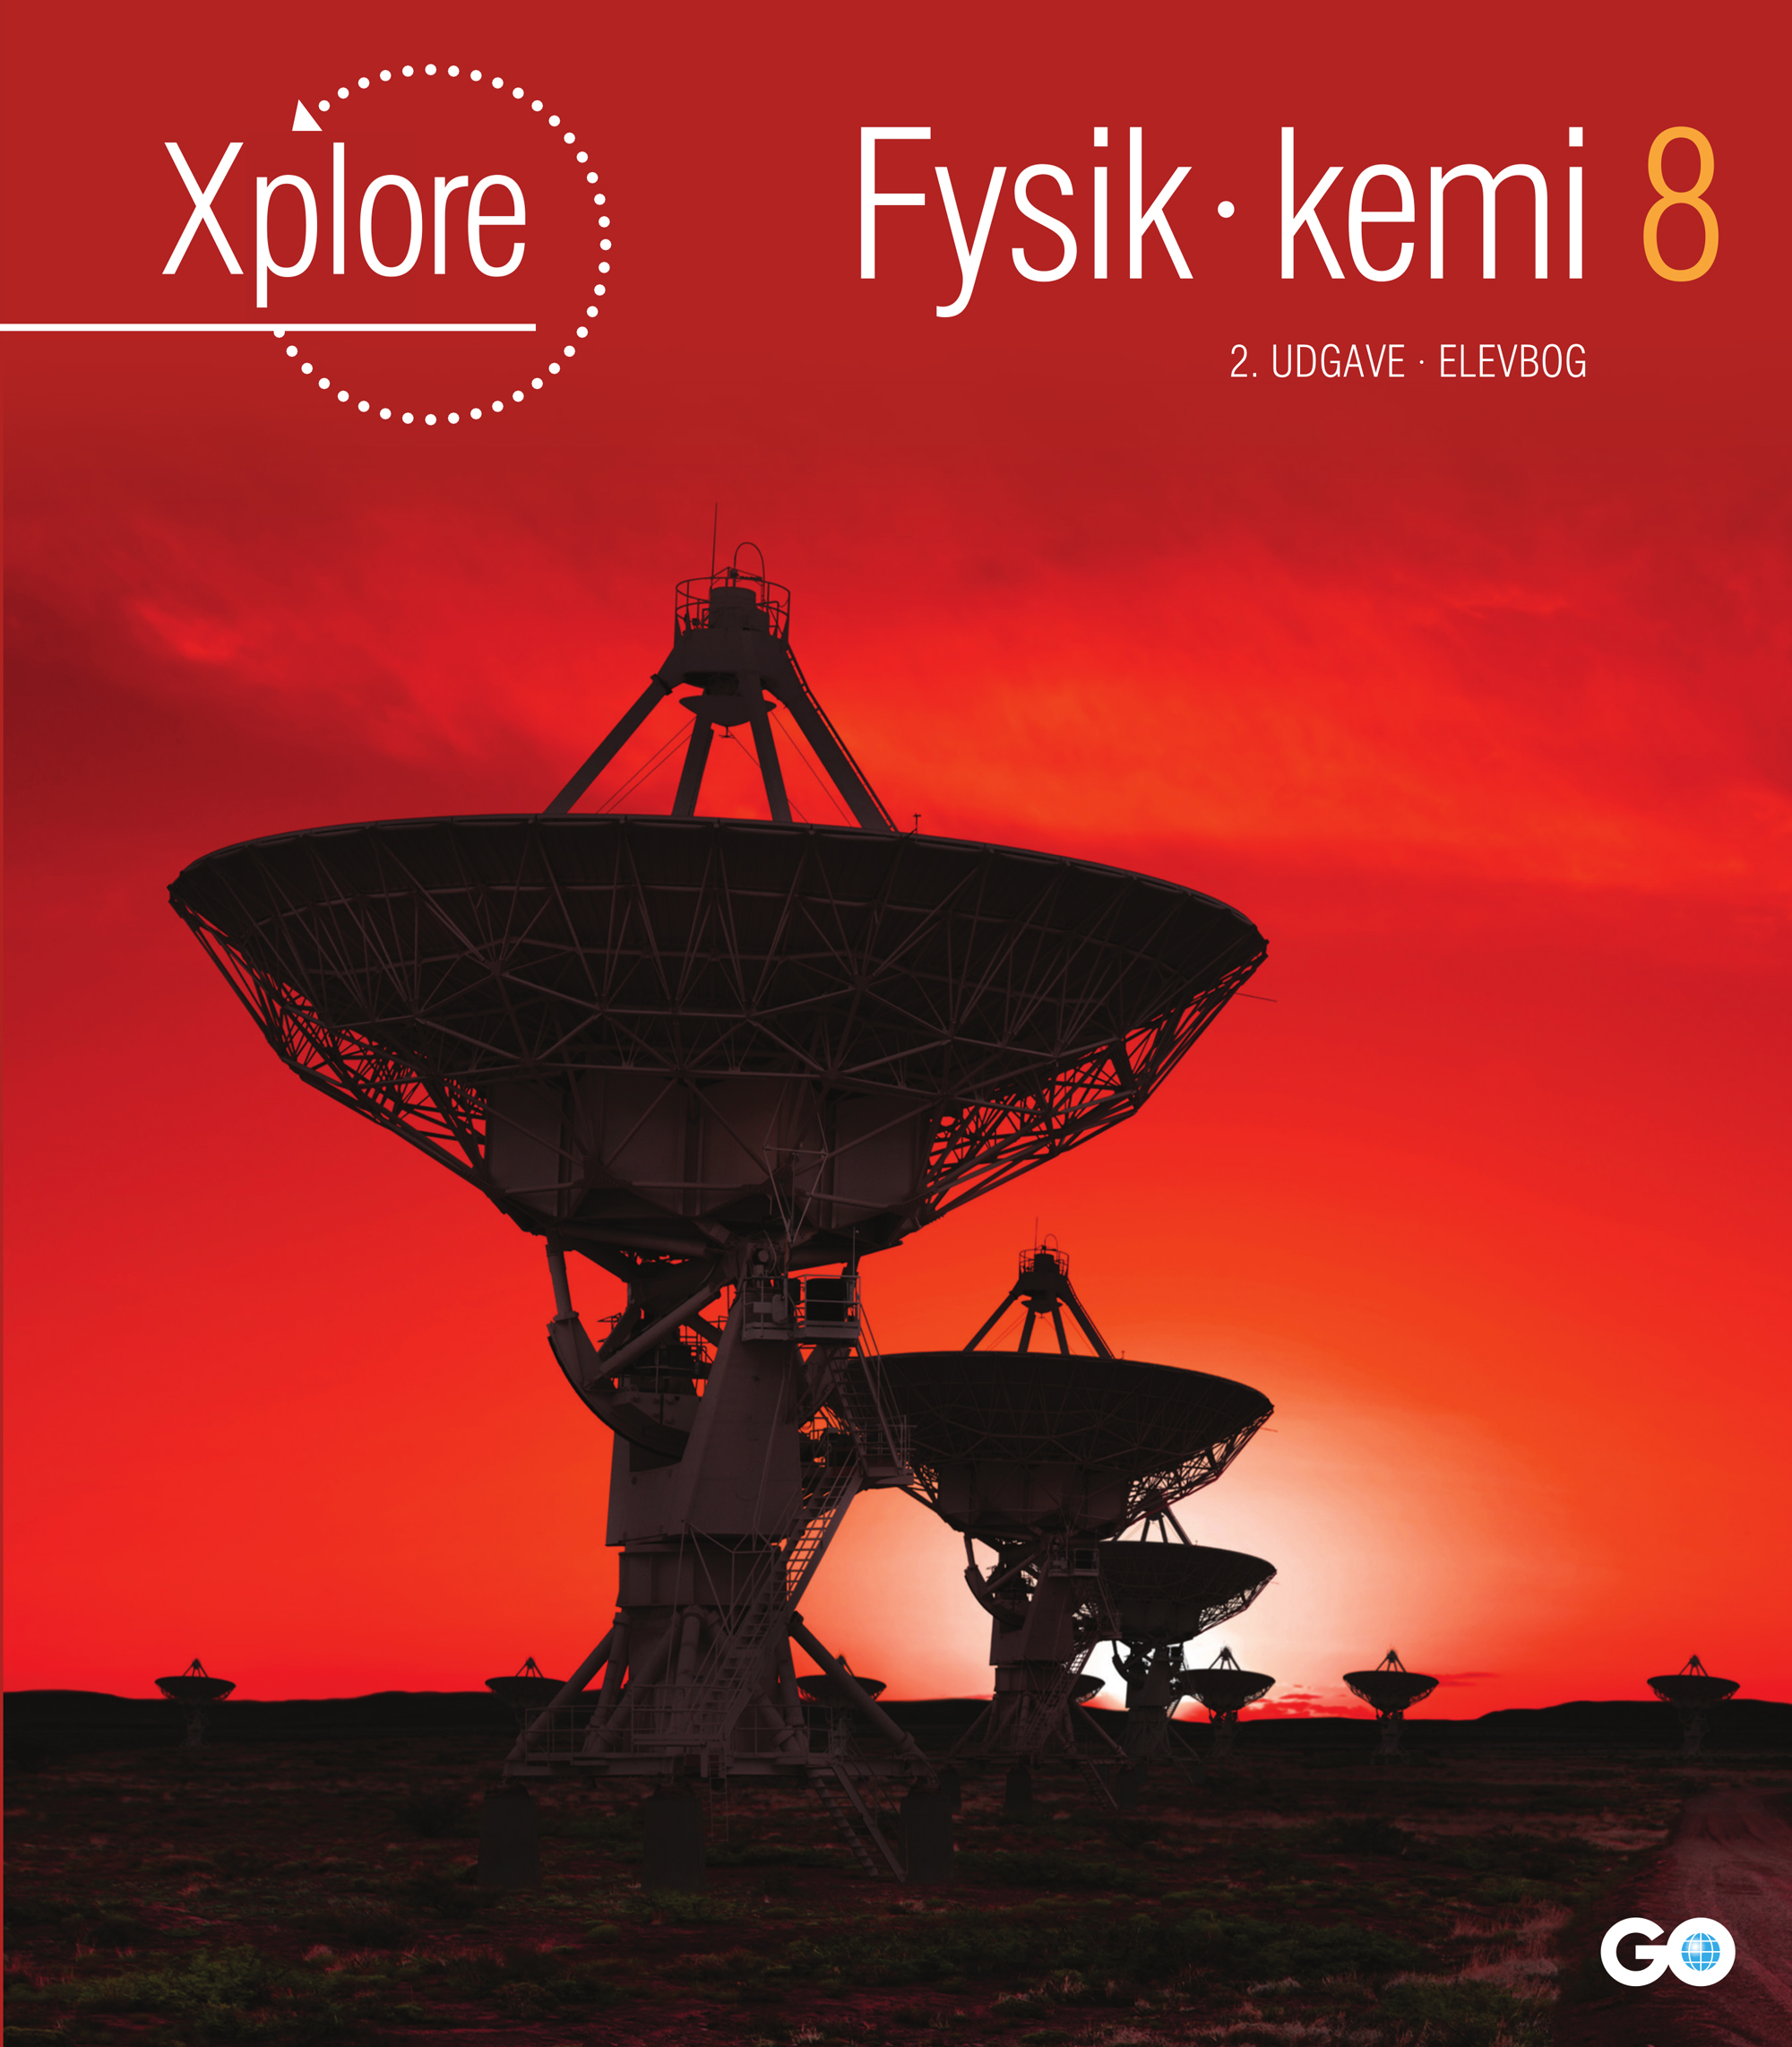 Forside Xplore Fysik/kemi 8 Elevbog - 2. udgave